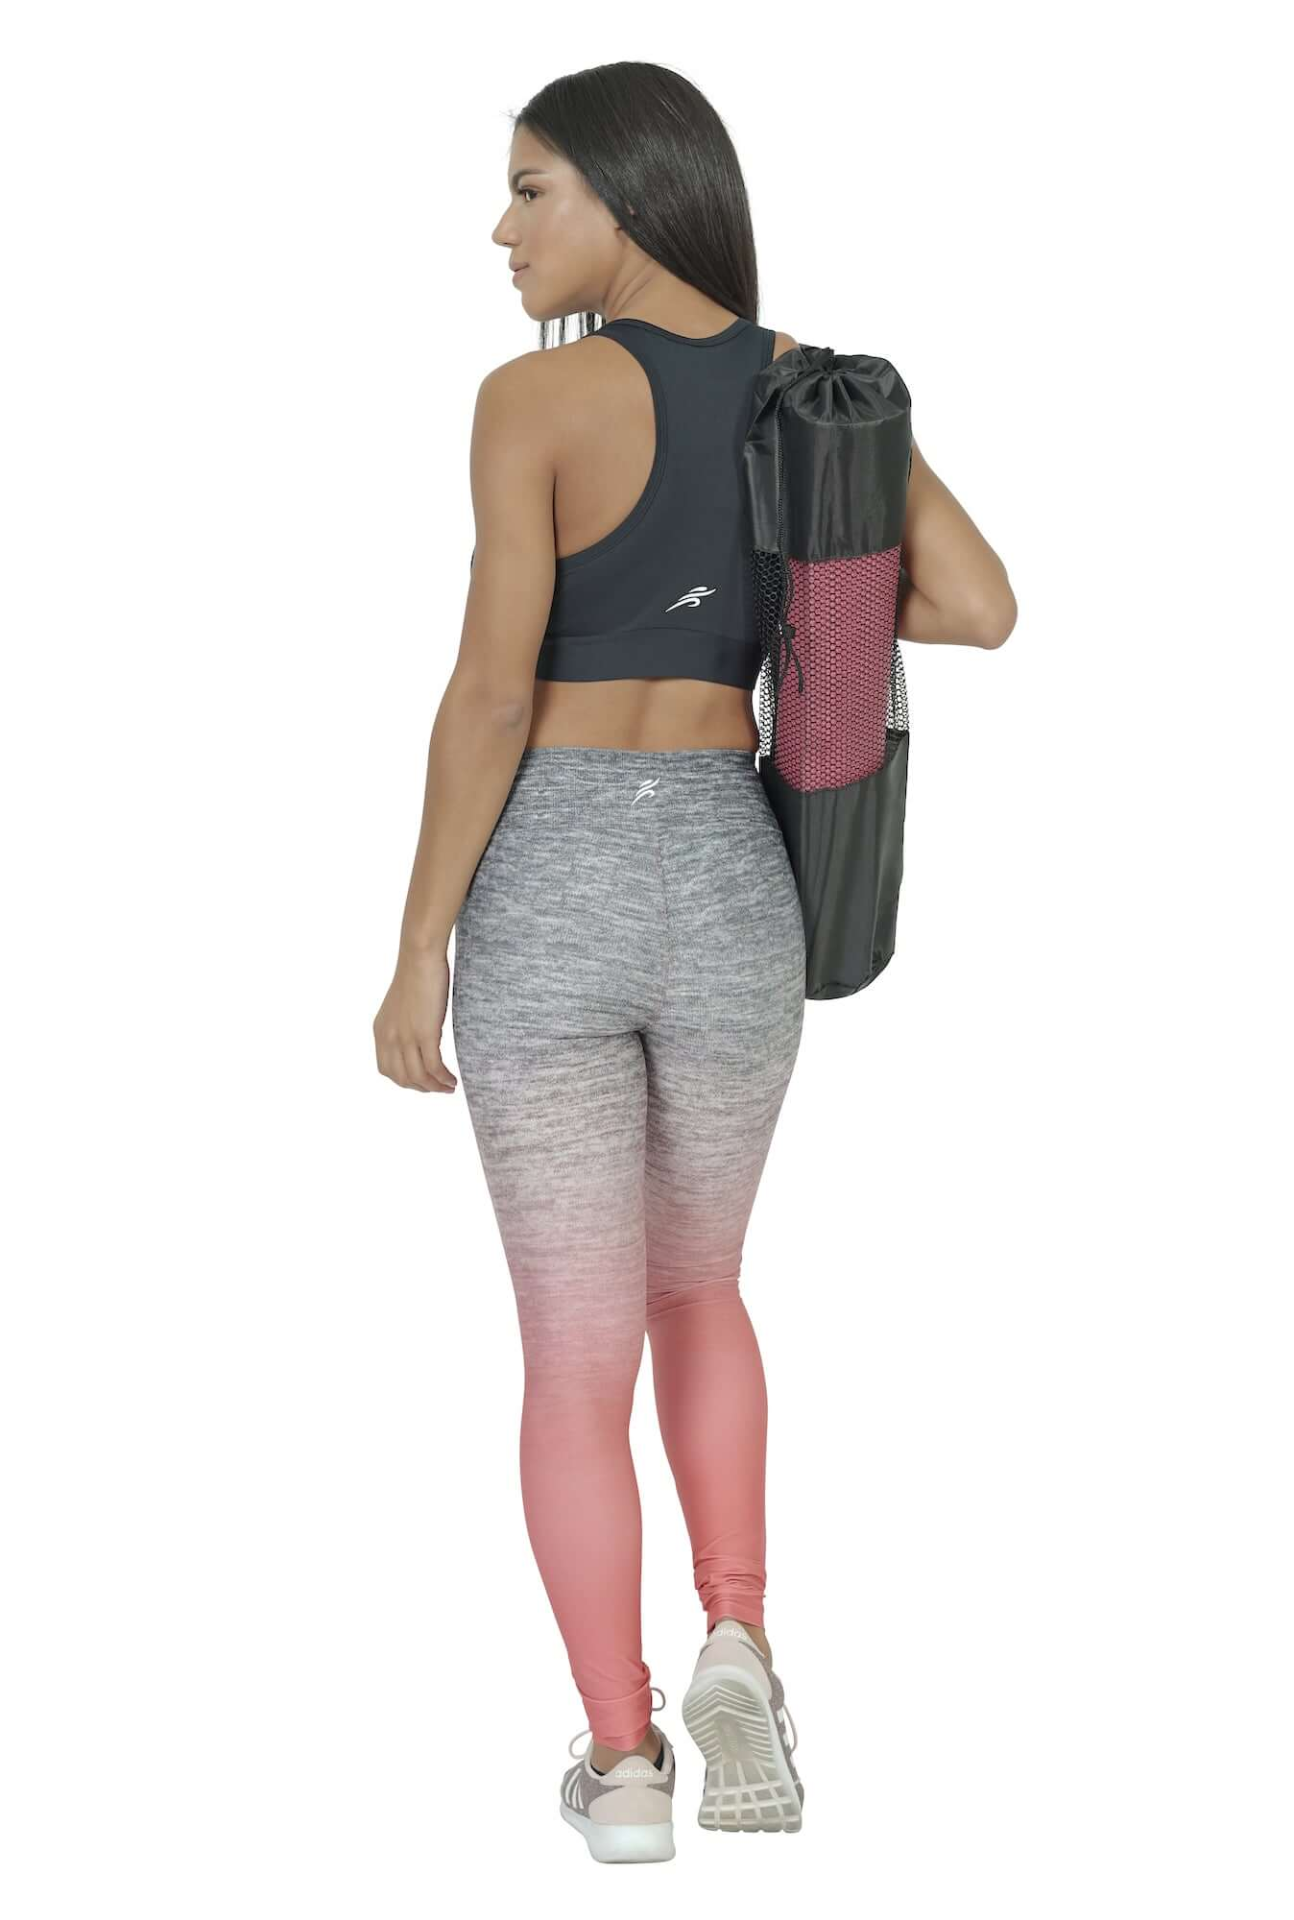 Asana Yoga Mat Bag, Goodies N Stuff